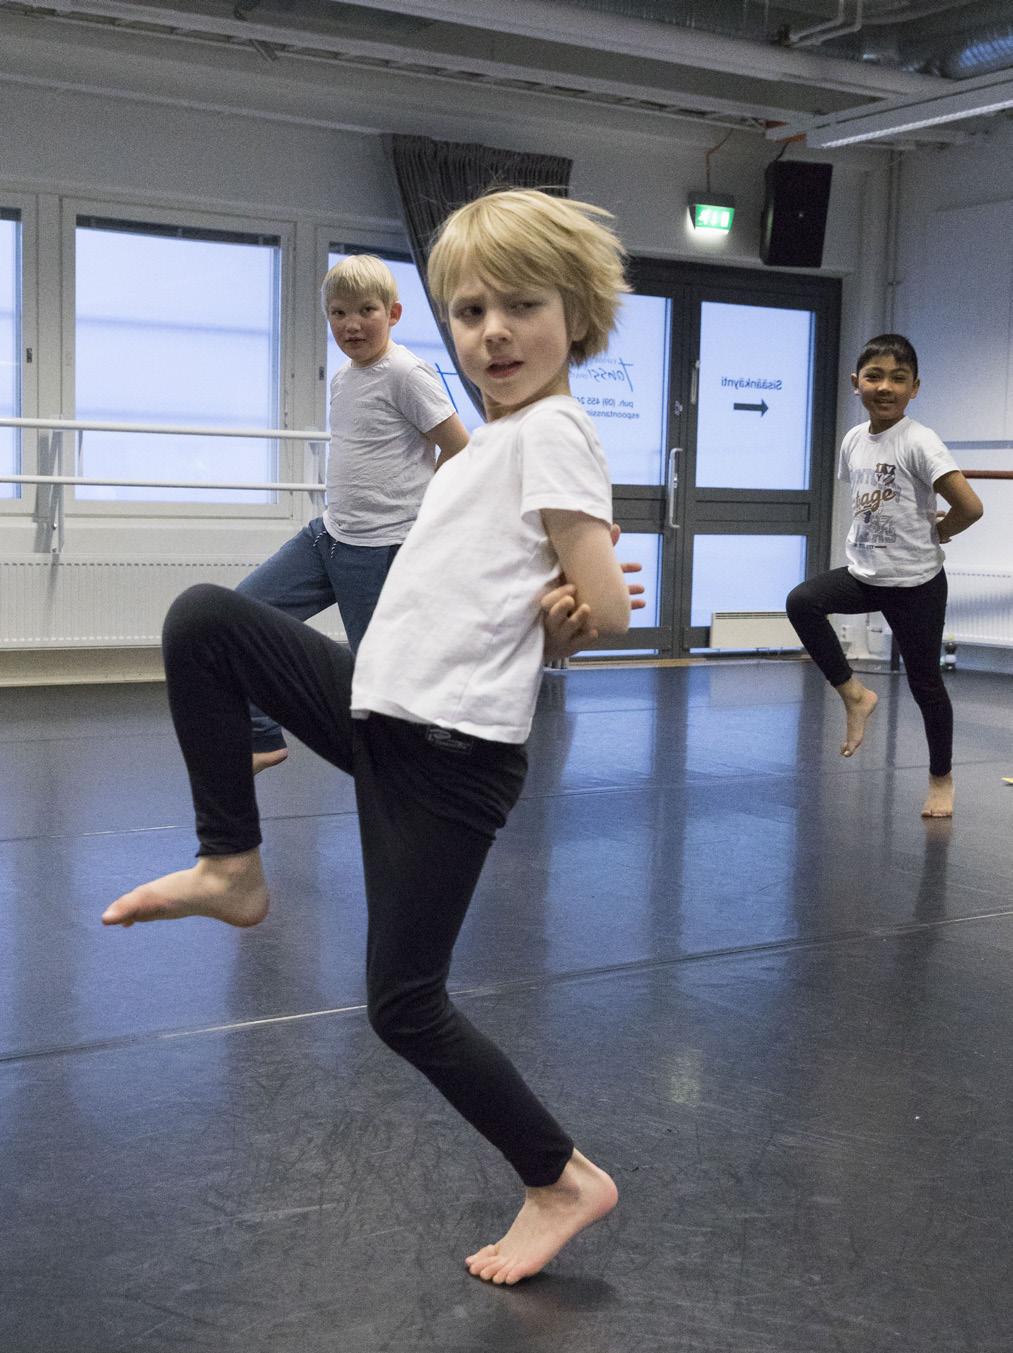 Tanssin perusteiden harjoittelu aloitetaan tanssiharjoituksilla, joissa käytetään mielikuvia ja satujen maailmaa.